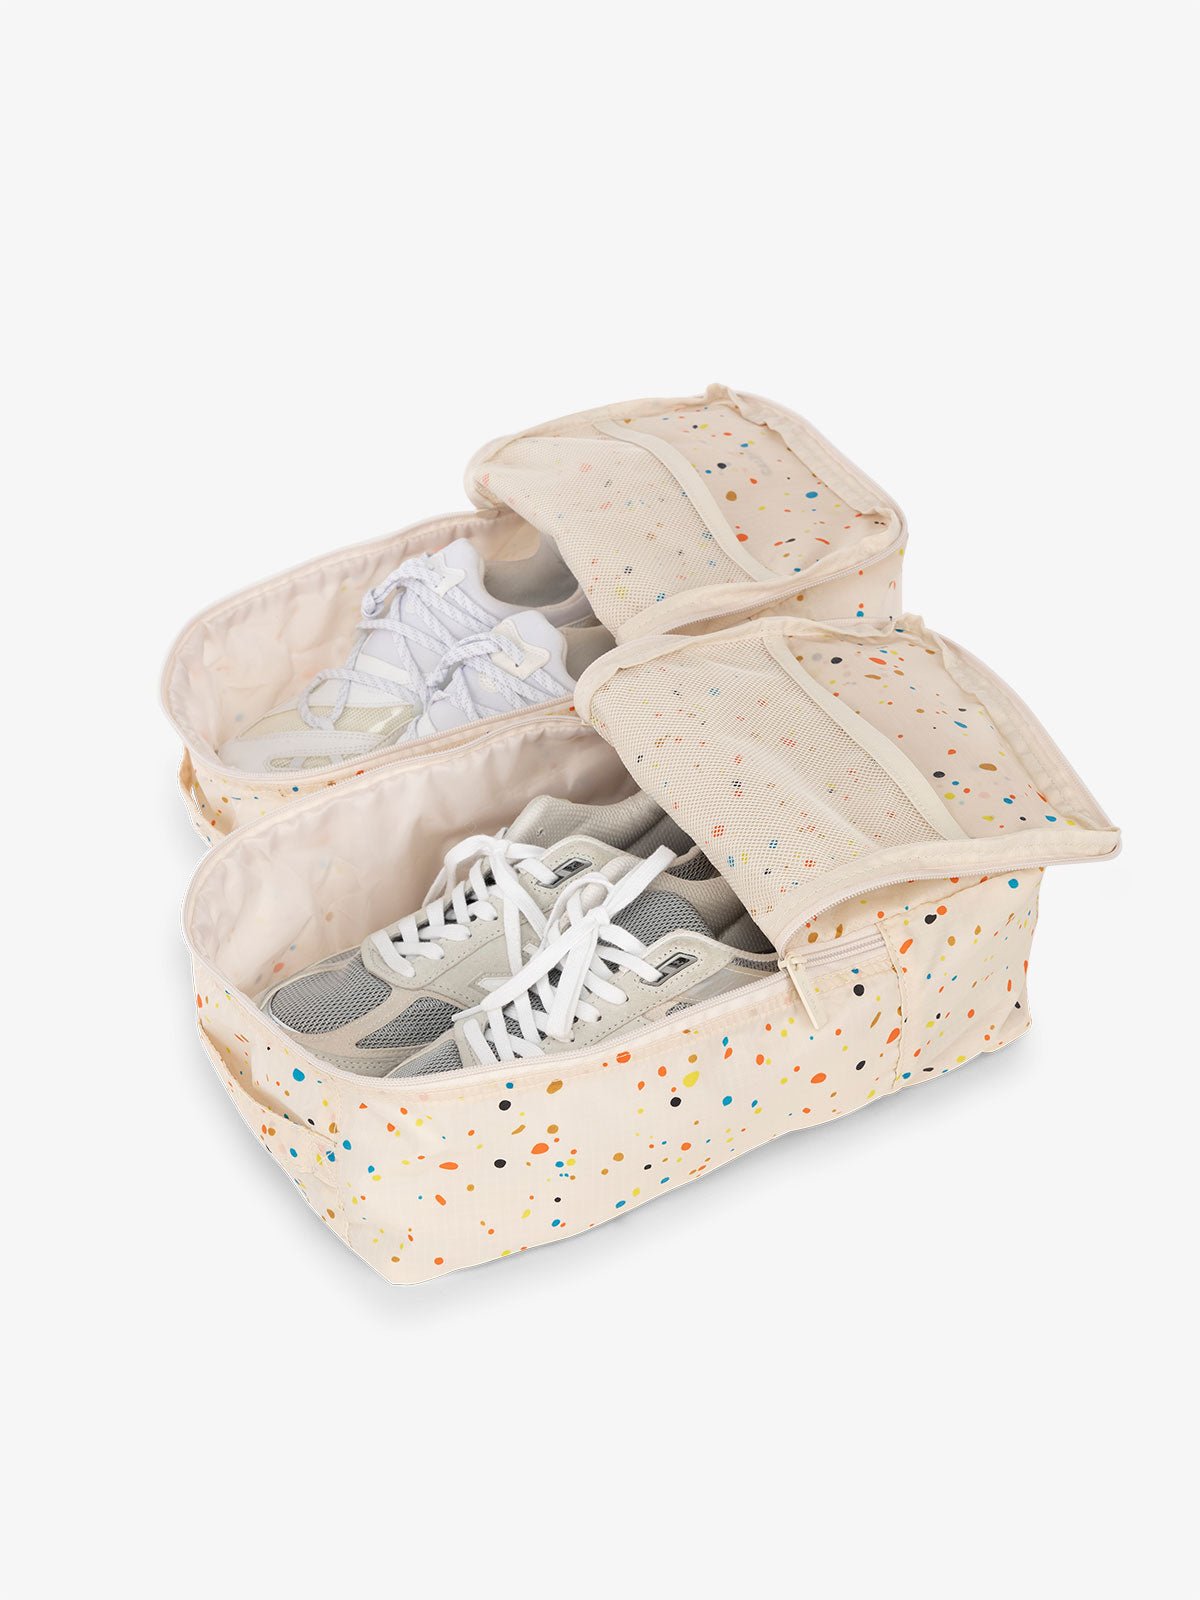 CALPAK Compakt shoe bag set with mesh pockets for travel in beige speckle print